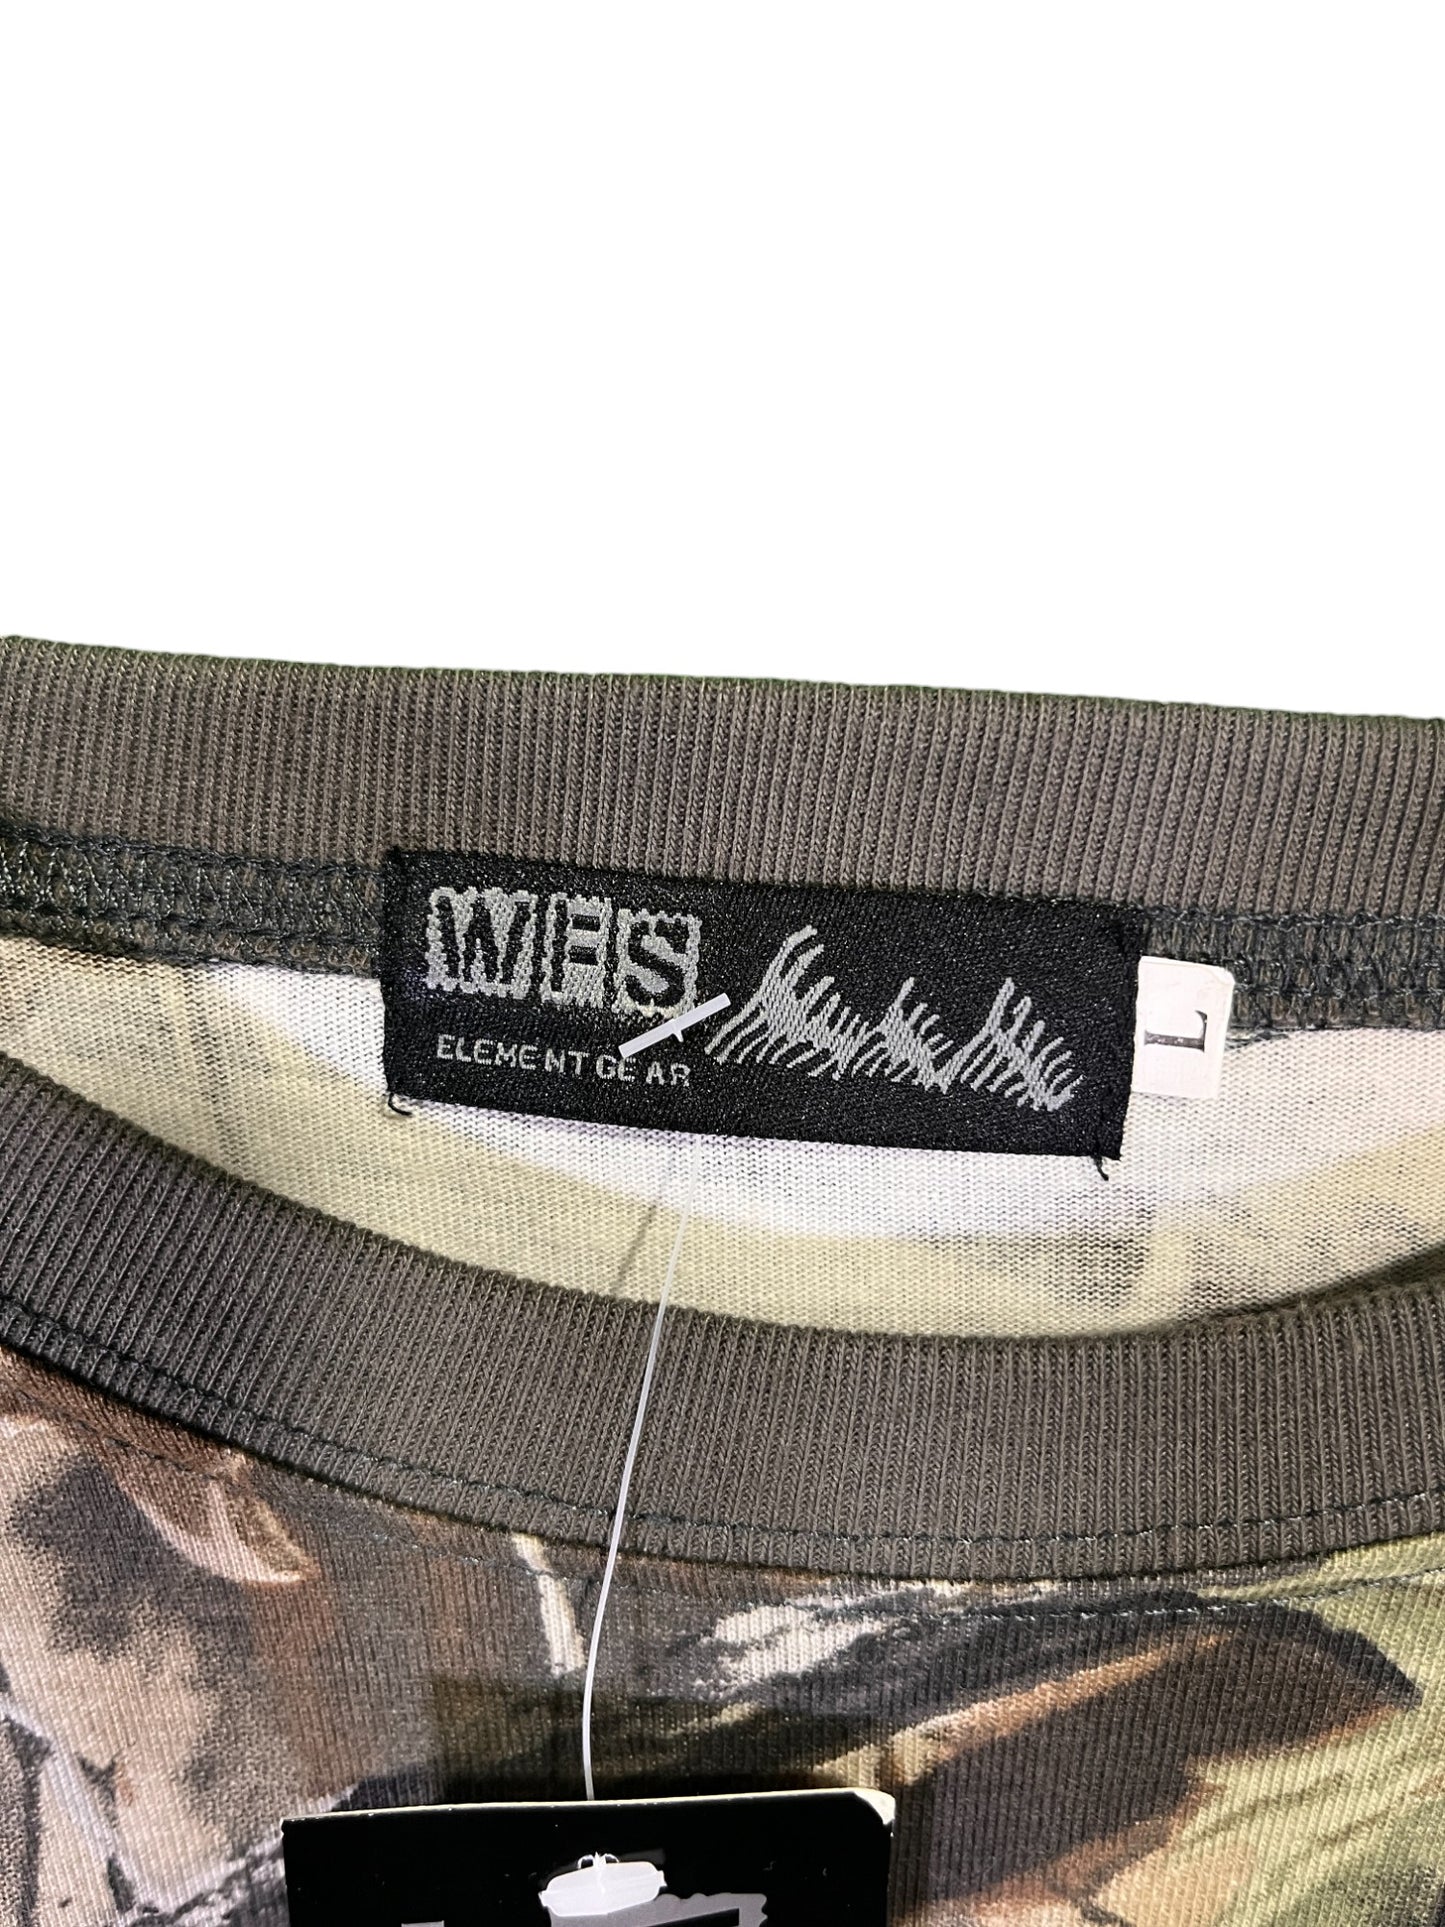 WFS Brand Woodland Hunter Camo Long Sleeve Shirt Size Large